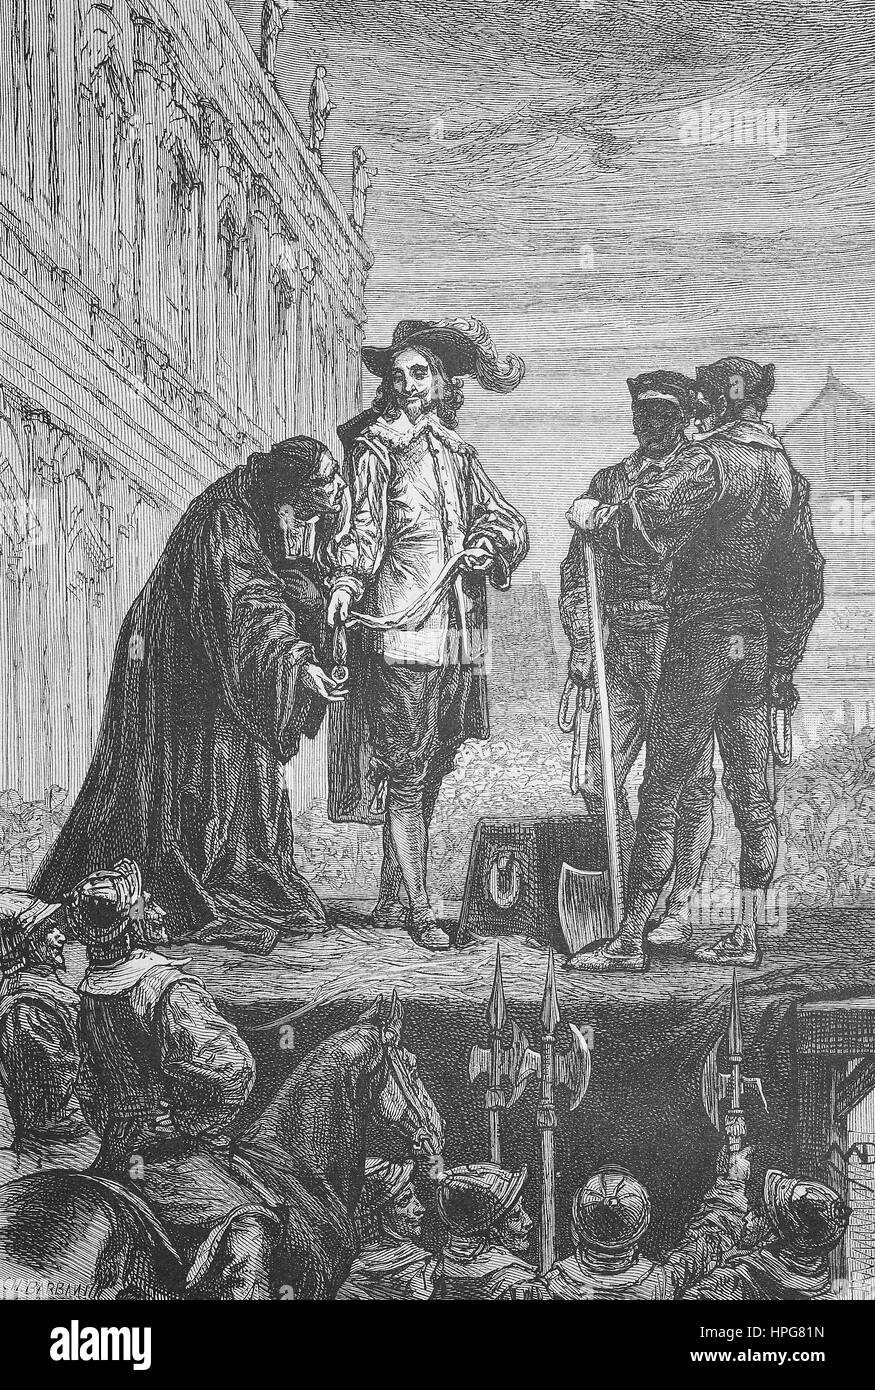 Carlo I di decapitazione, Charles I, 1600 - 1649, fu monarca dei tre regni di Inghilterra, in Scozia e in Irlanda dal 27 marzo 1625 fino alla sua esecuzione in 1649, digital Riproduzione migliorata di una xilografia a partire dall'anno 1885 Foto Stock